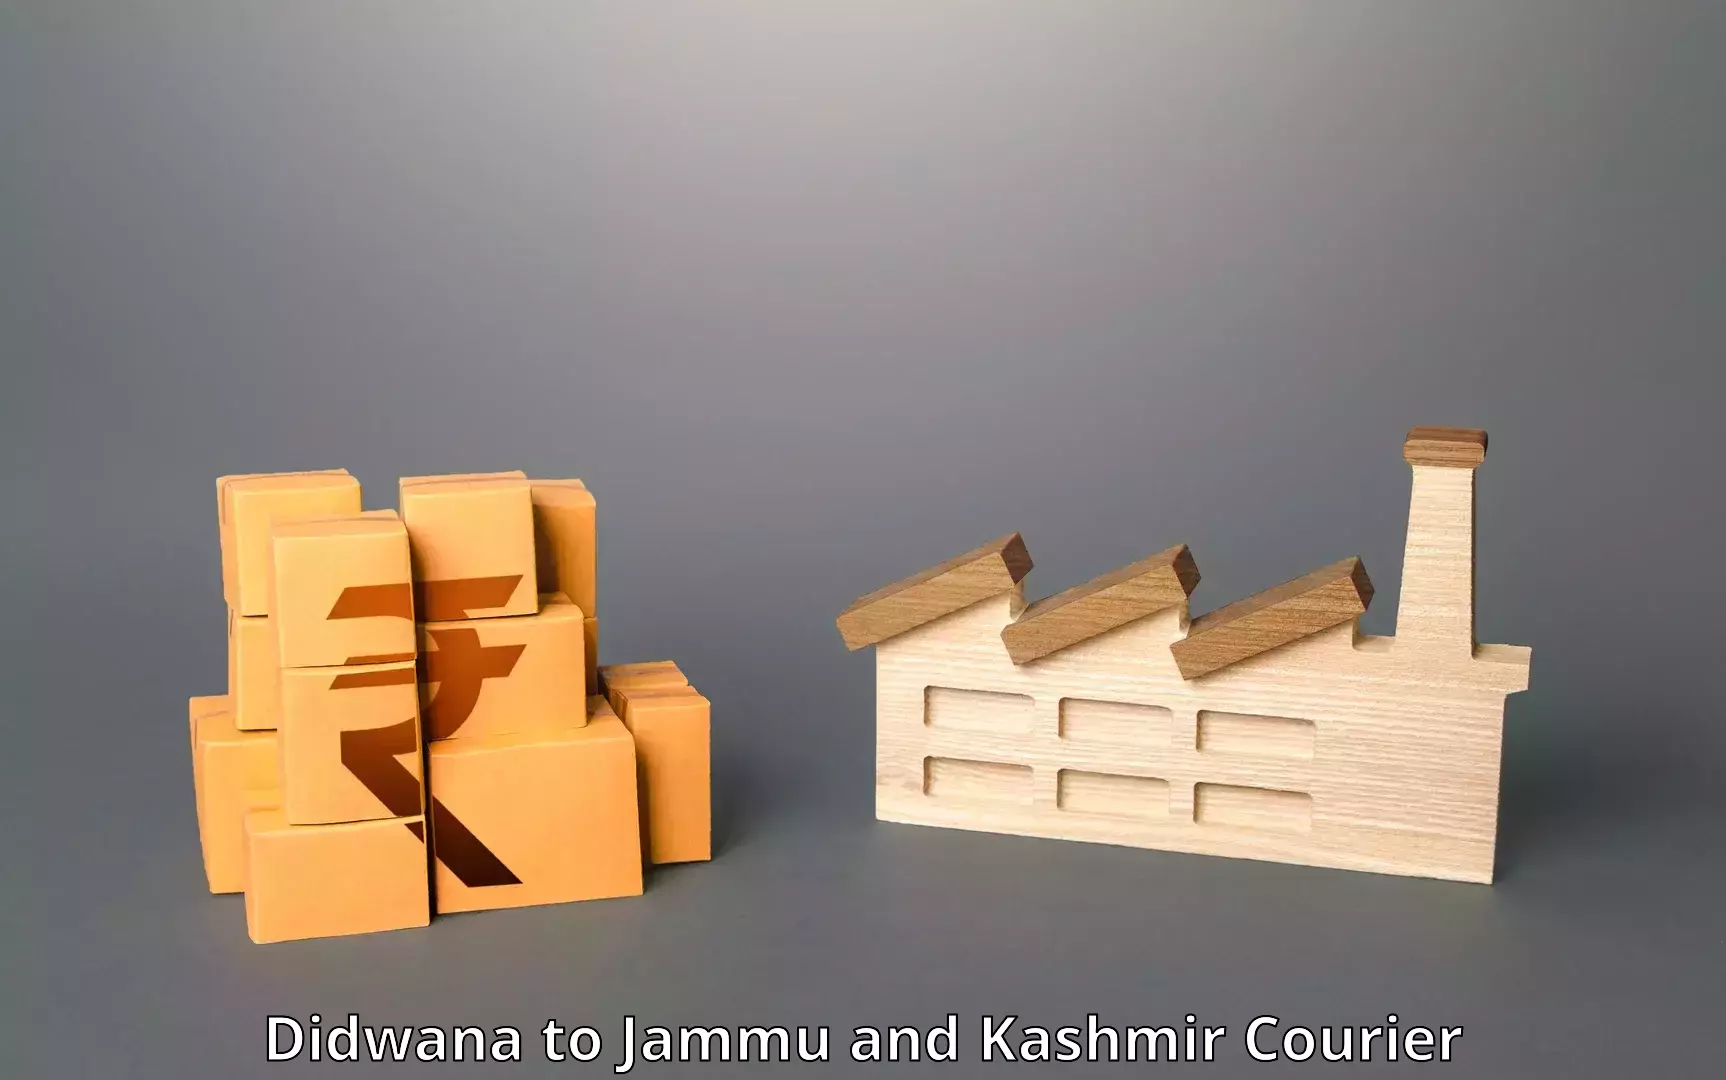 Express courier facilities Didwana to University of Kashmir Srinagar